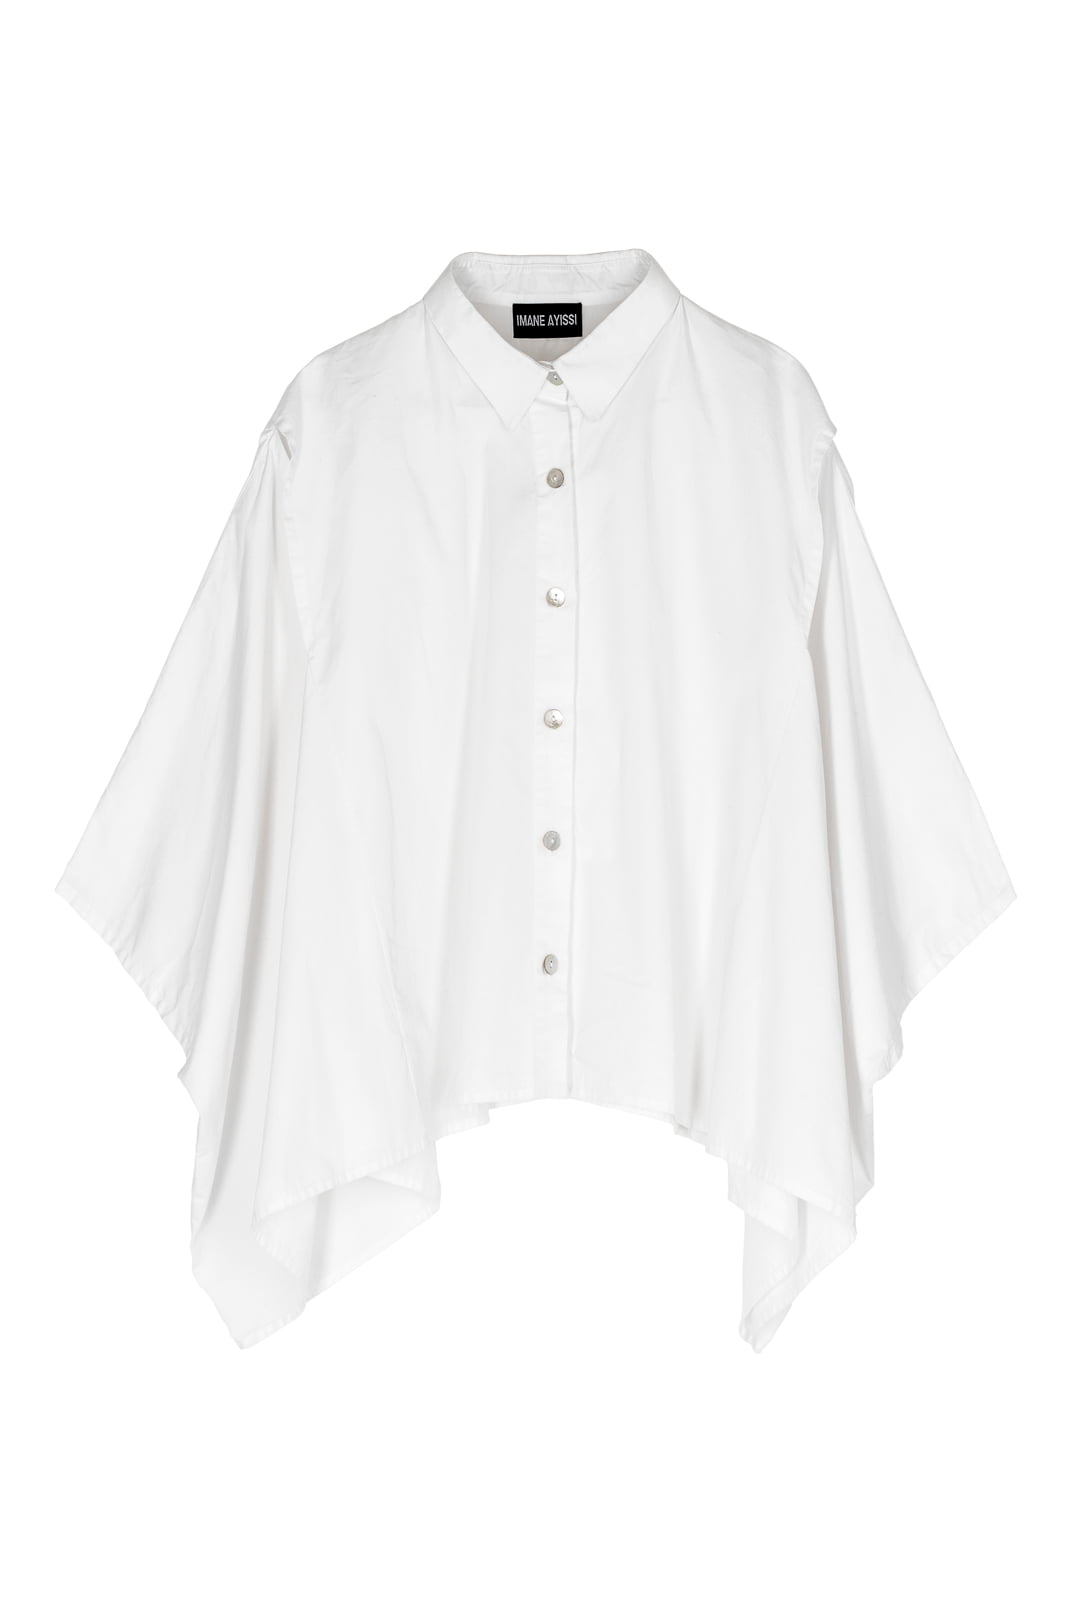 Haute couture white shirt Imane Ayissi